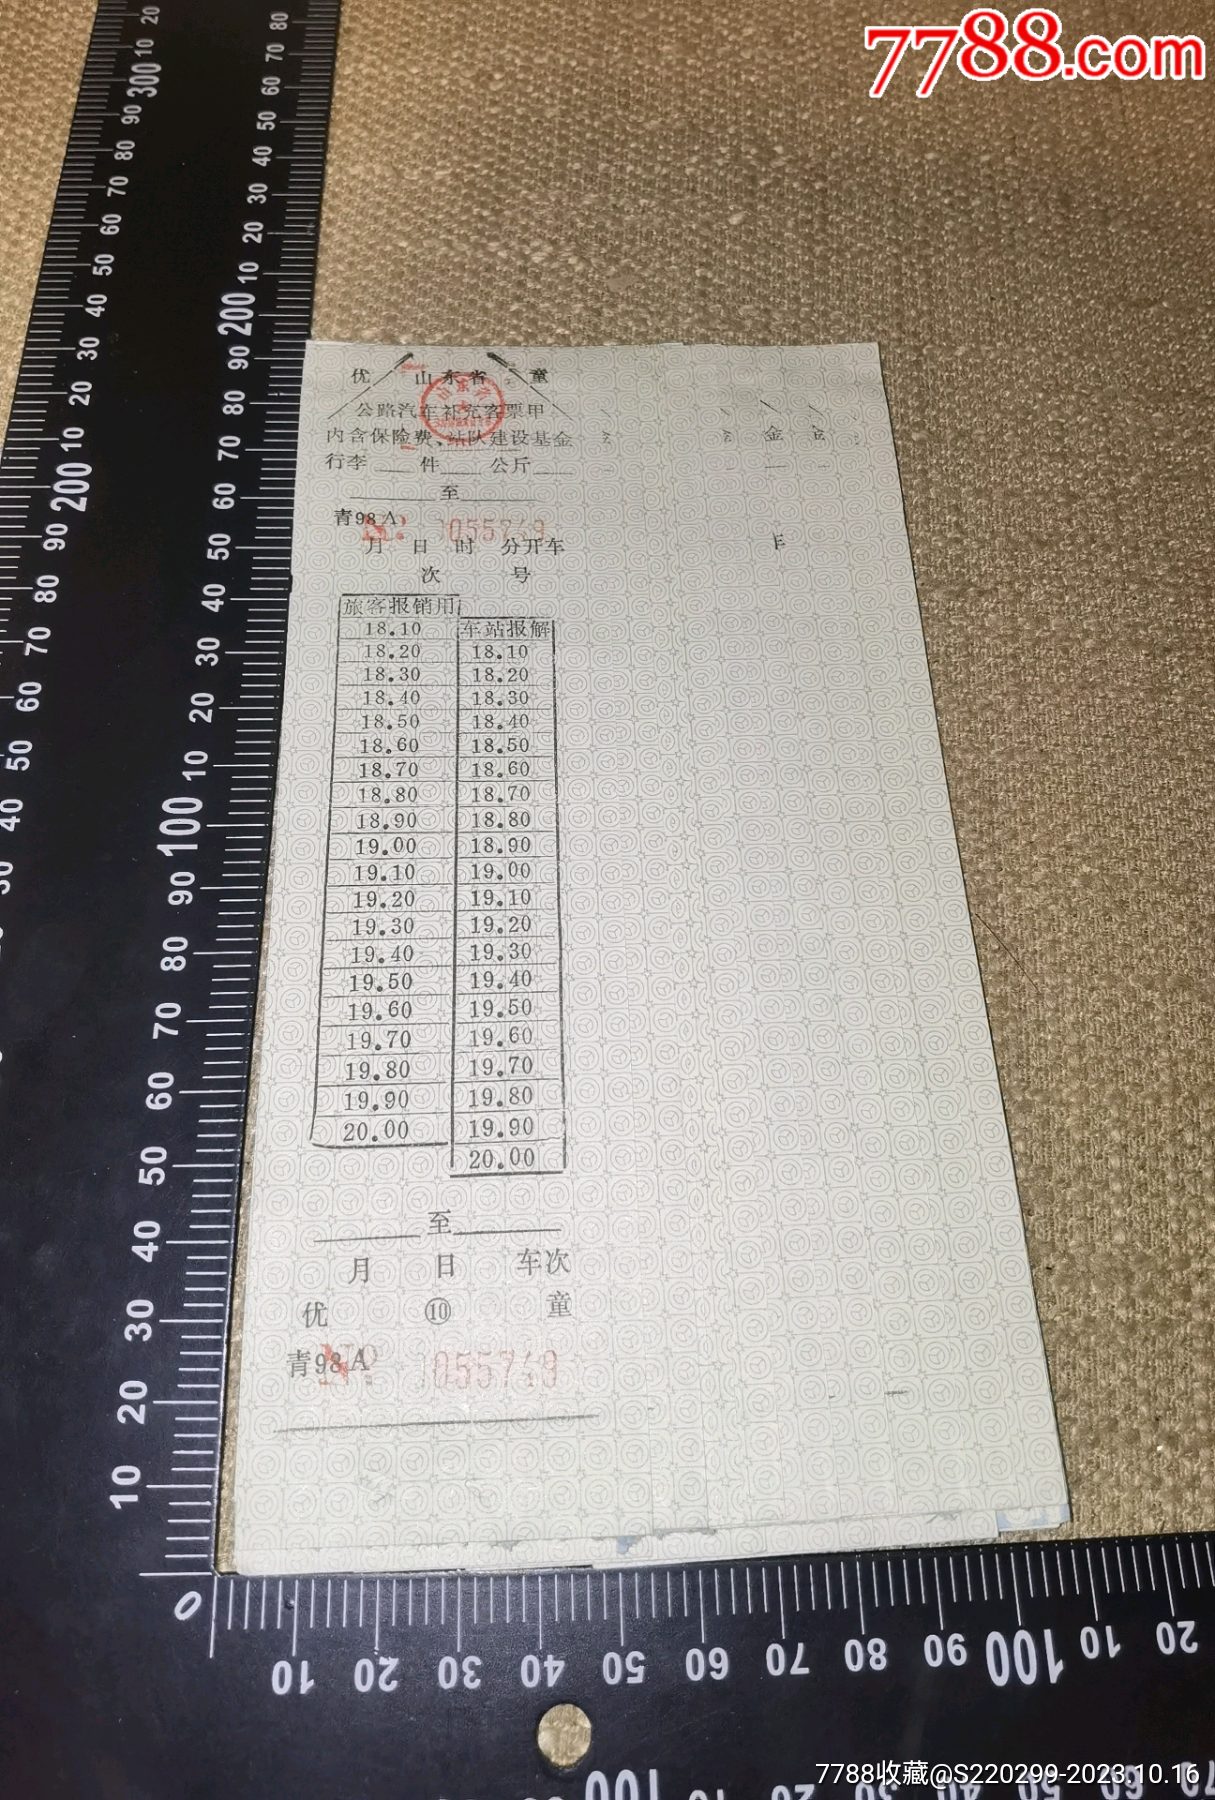 1998年山东省公路汽车补充客票甲一叠贴着的26枚票上没有笔迹等整体保